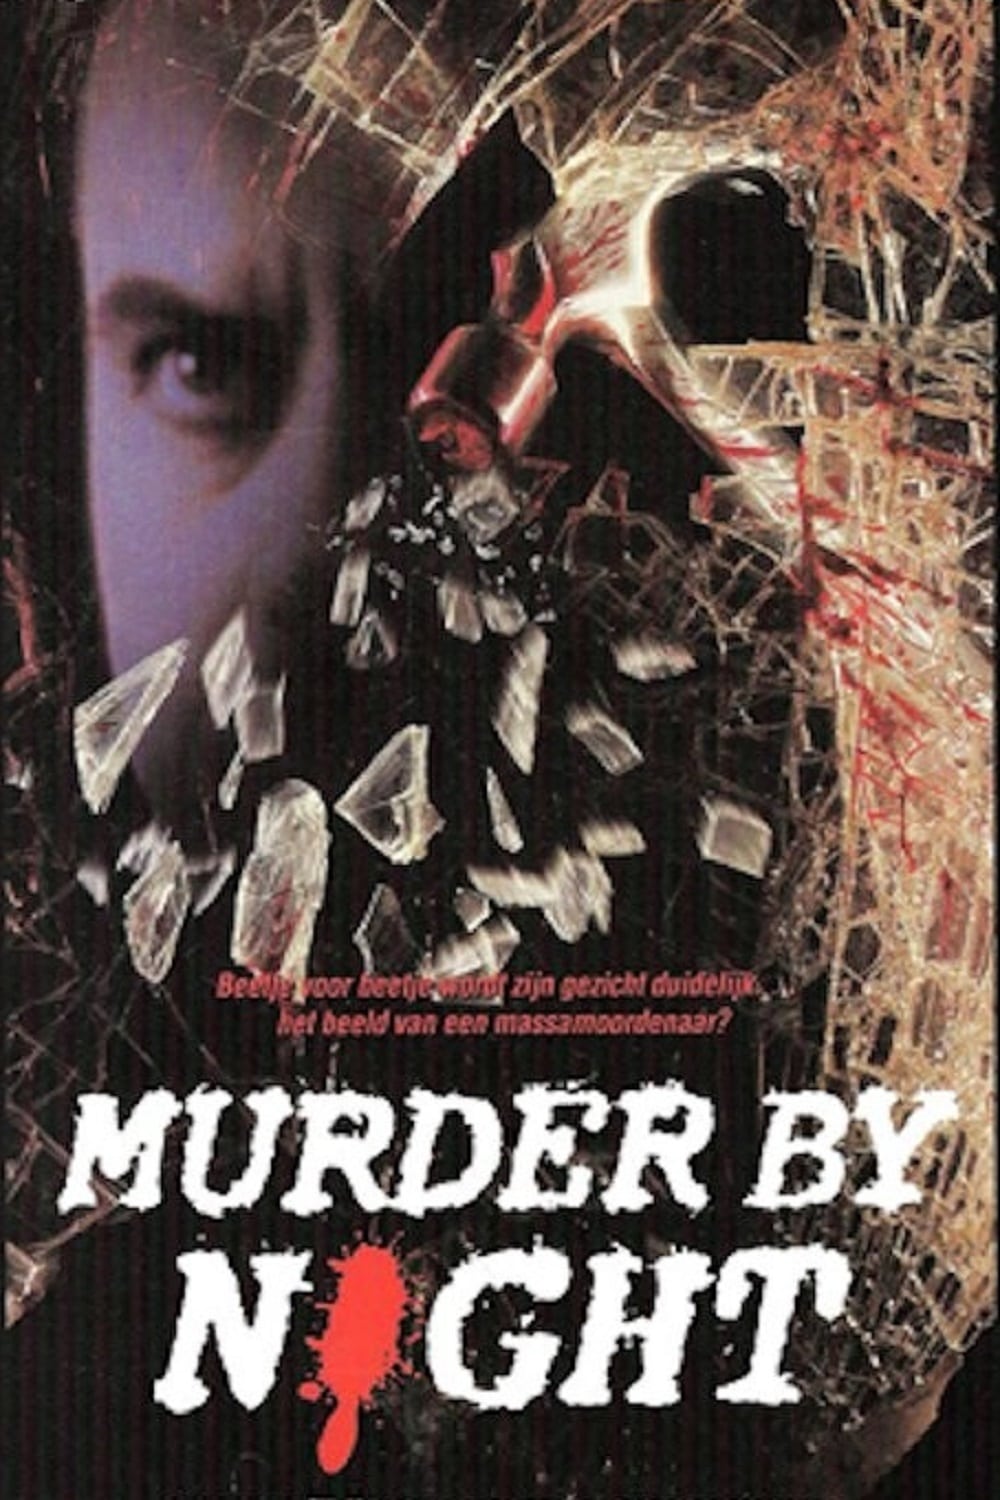 Murder by Night (1989)